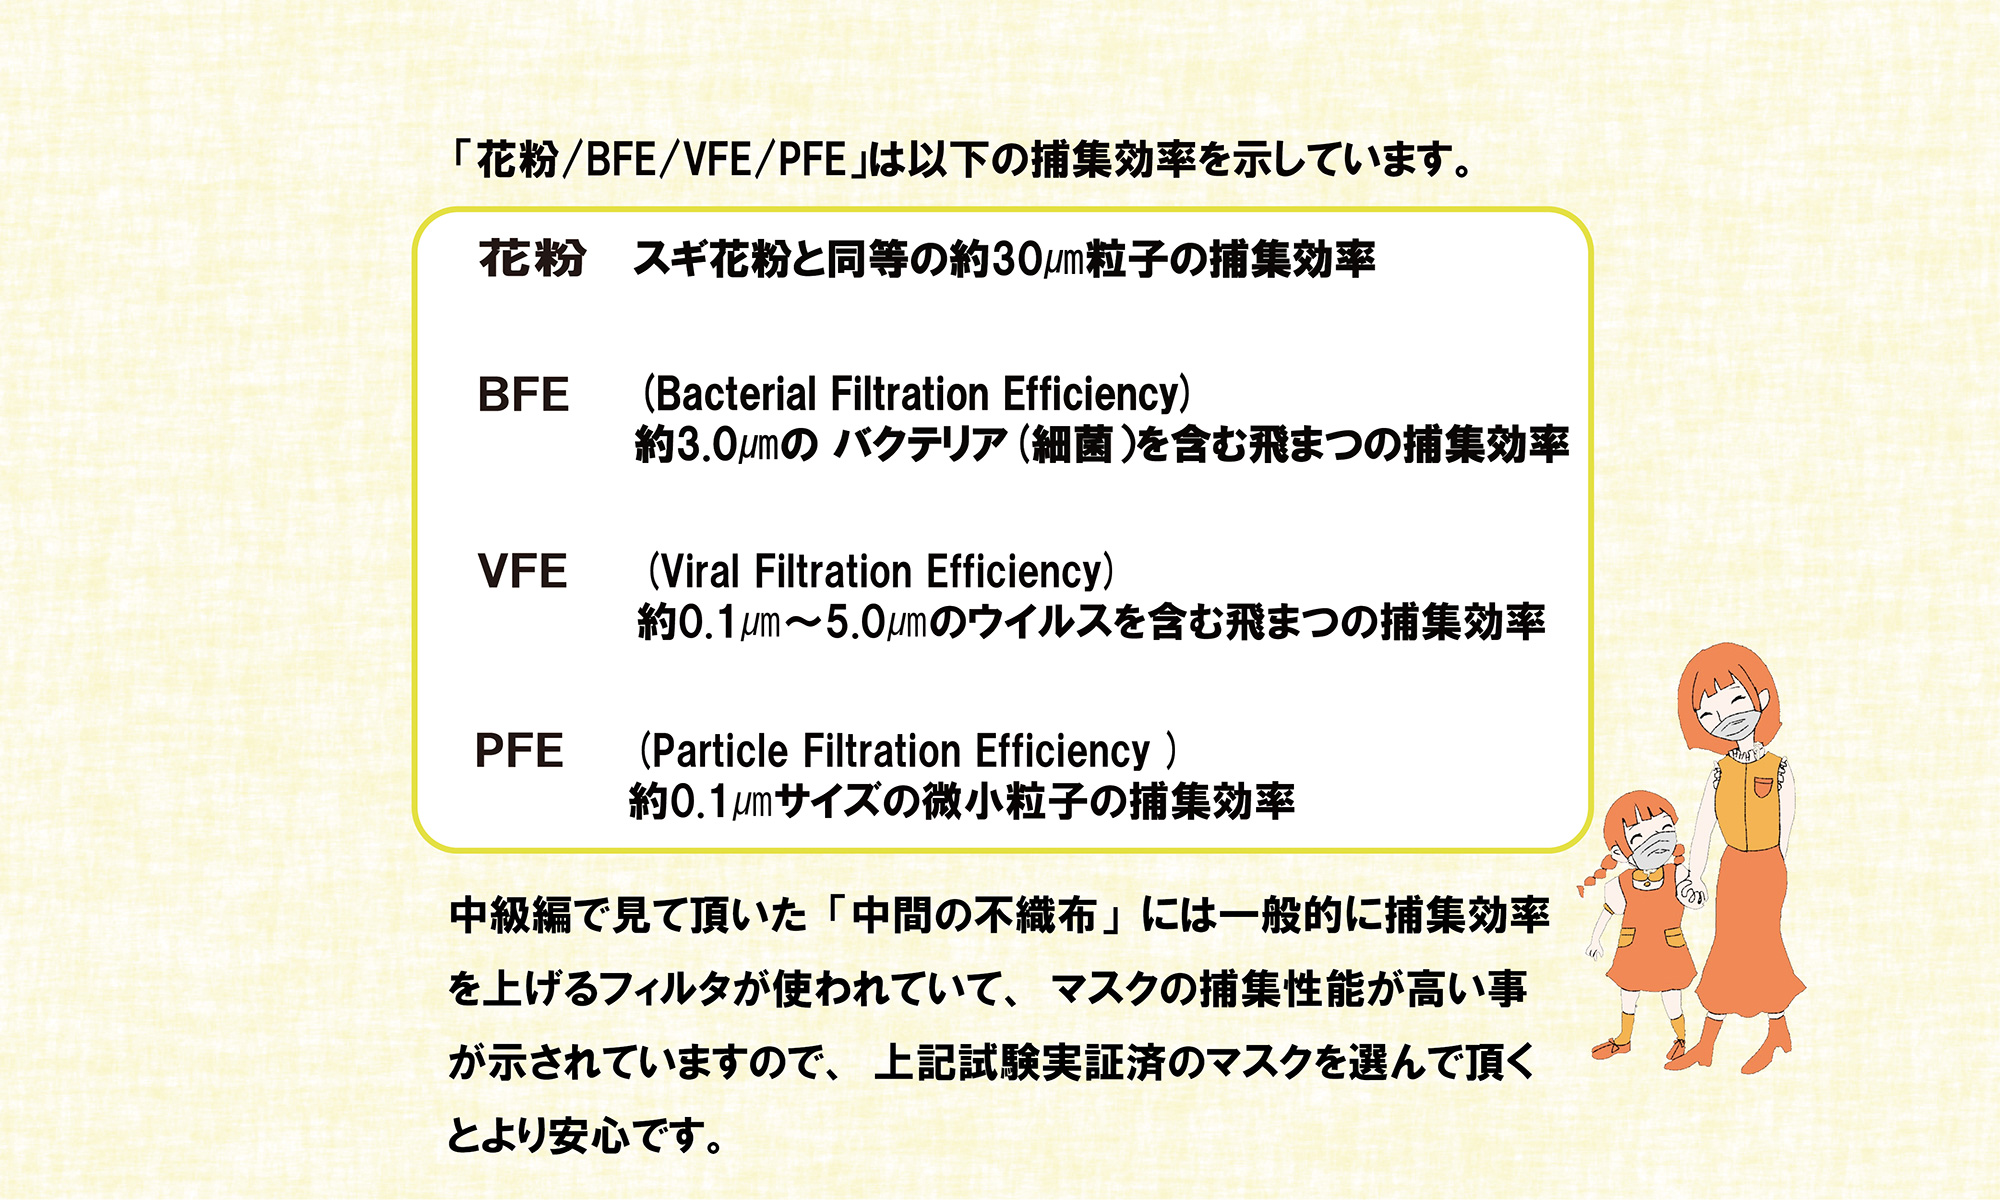 「花粉/BFE/VFE/PFE」は以下の捕集効率を示しています。